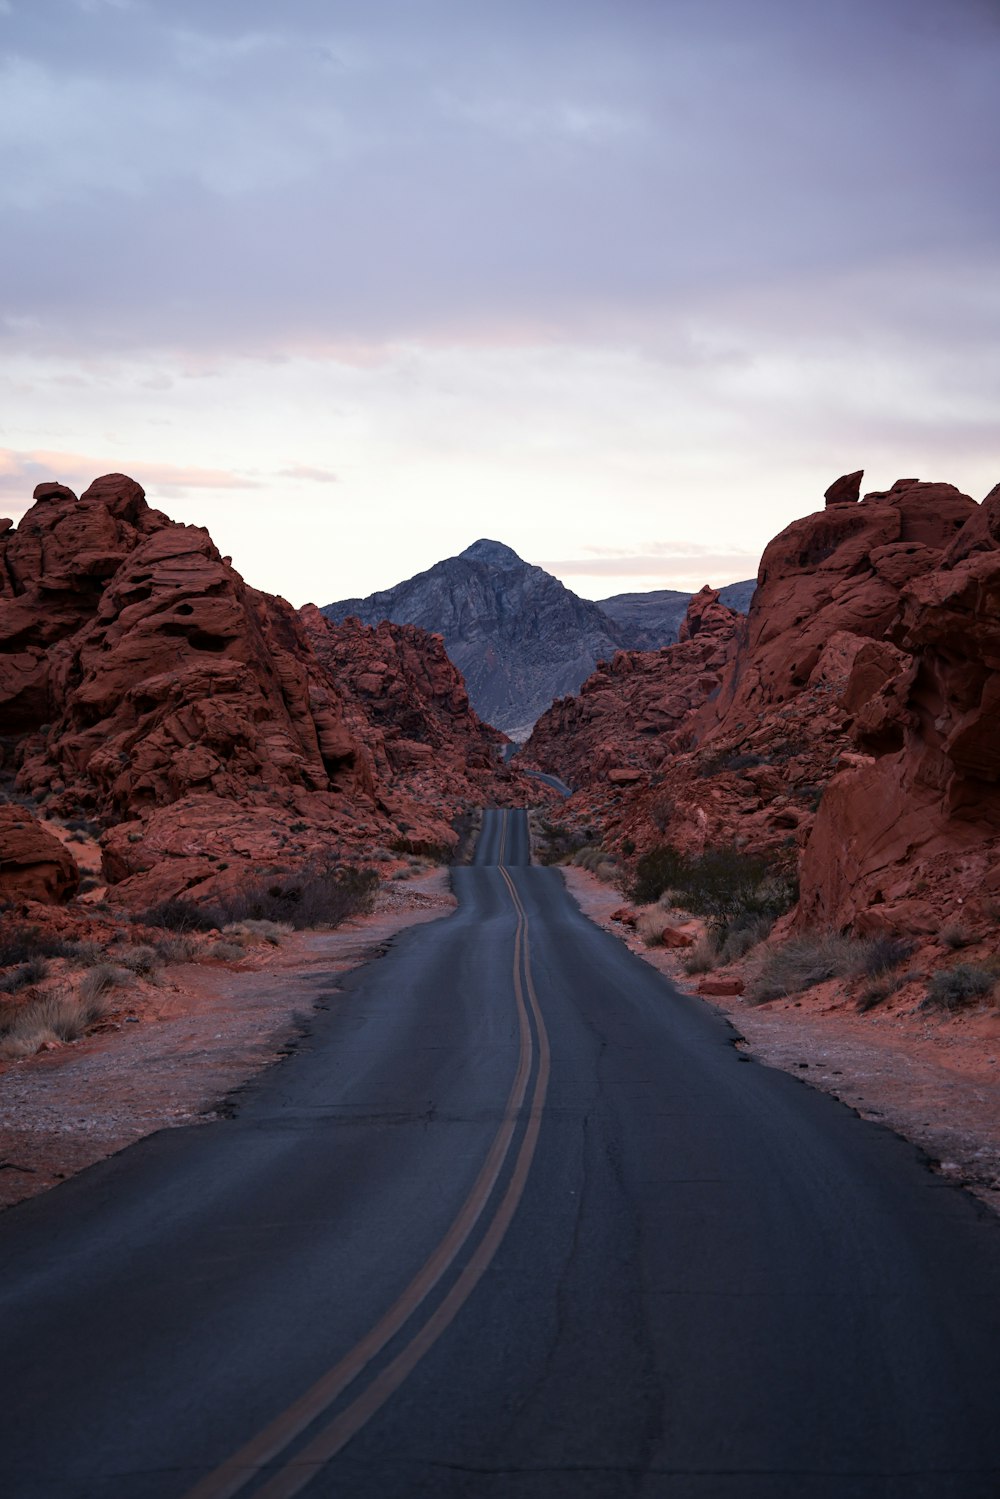 Un camino en medio de un desierto con montañas al fondo